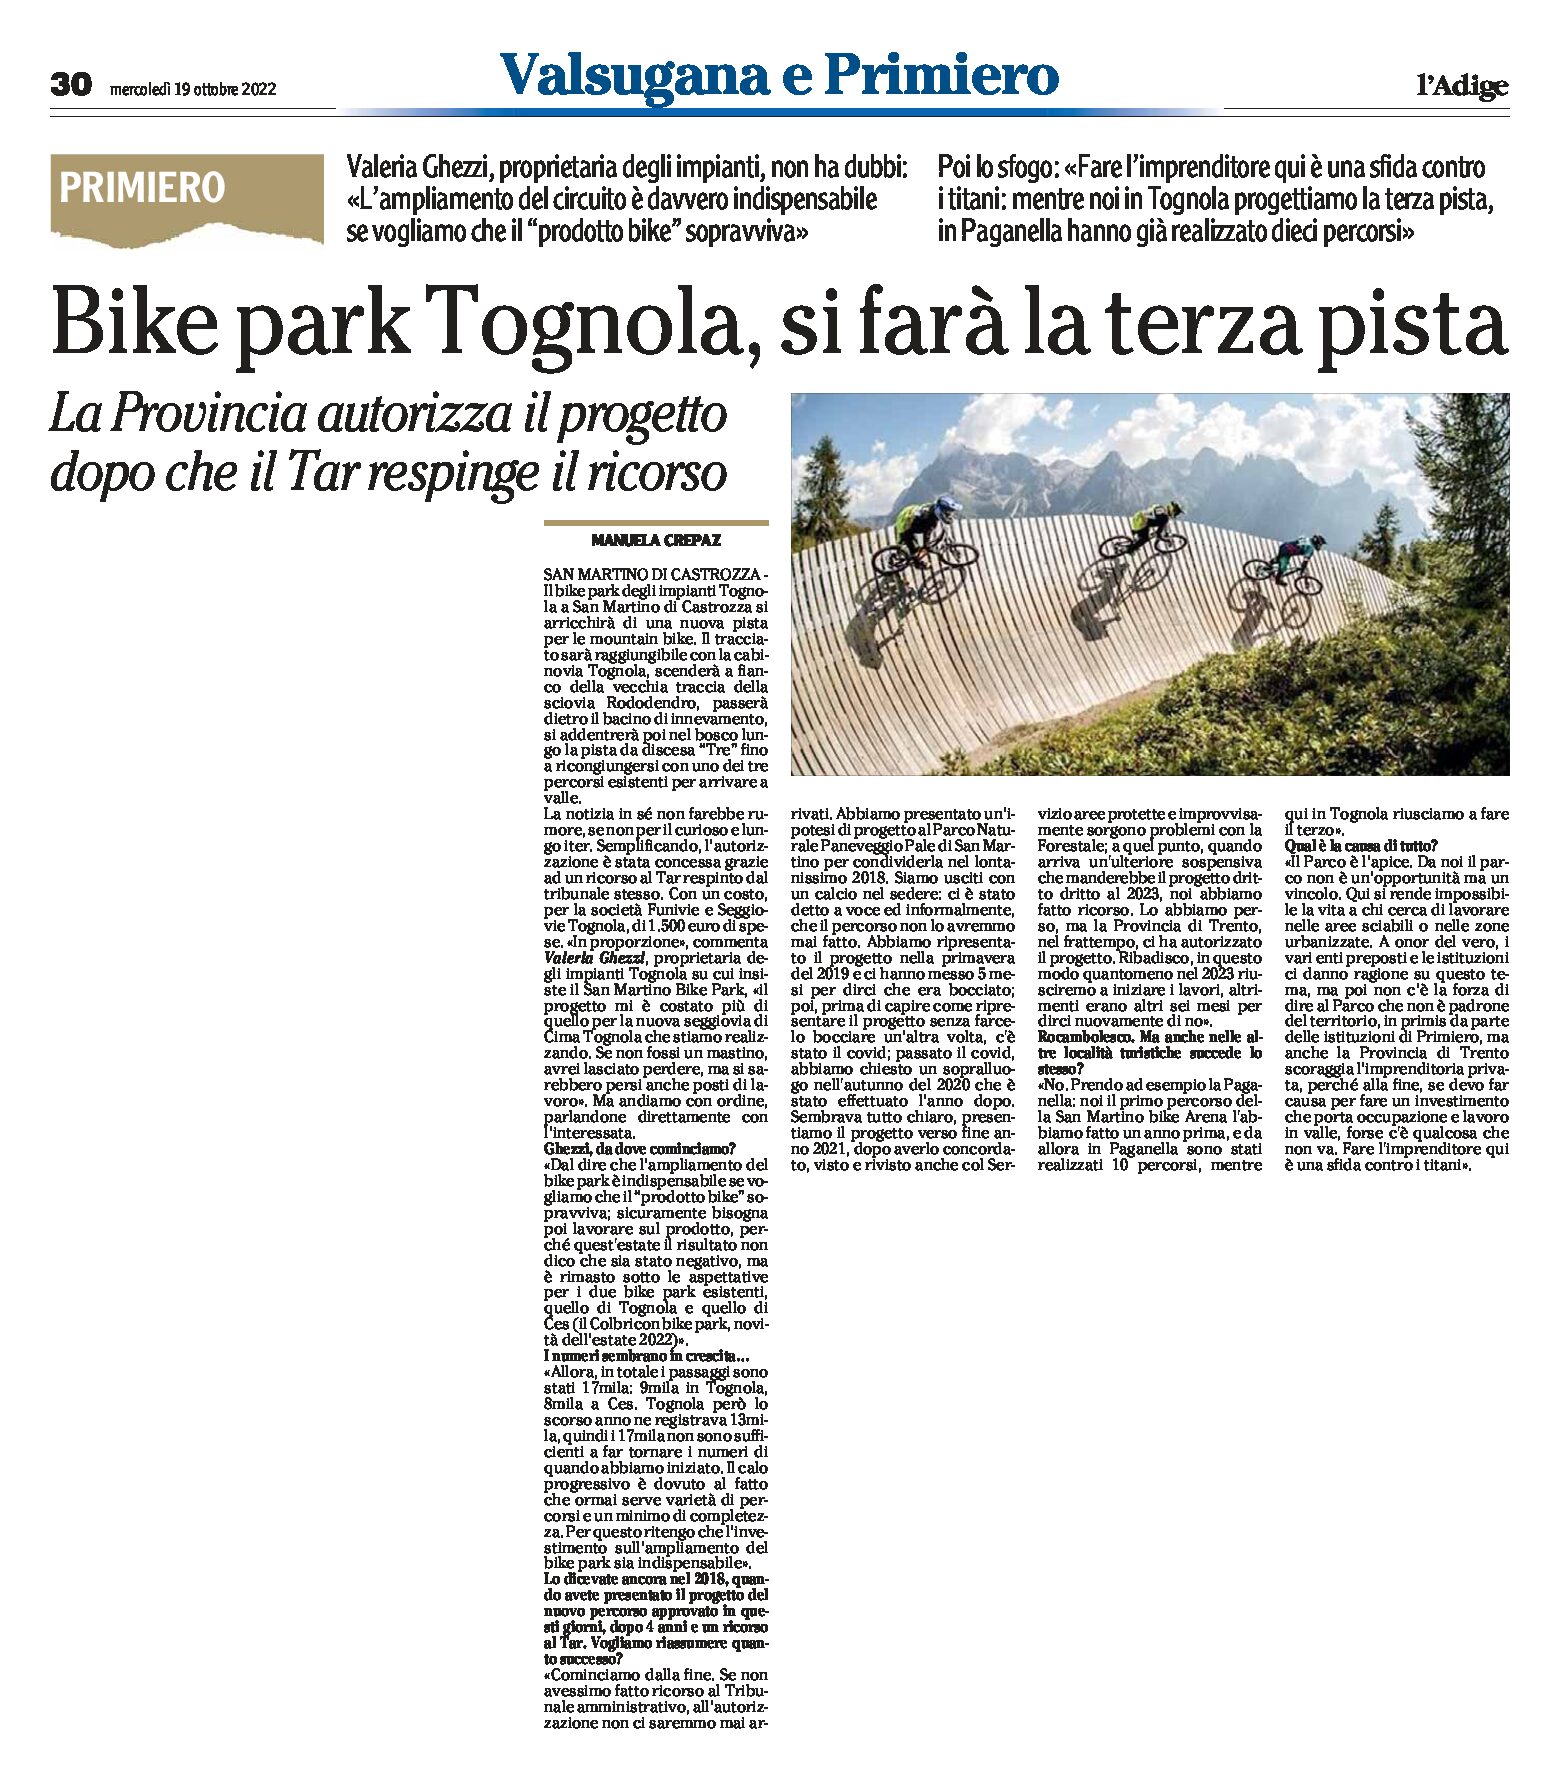 Bike park Tognola: si farà la terza pista. La Provincia autorizza il progetto